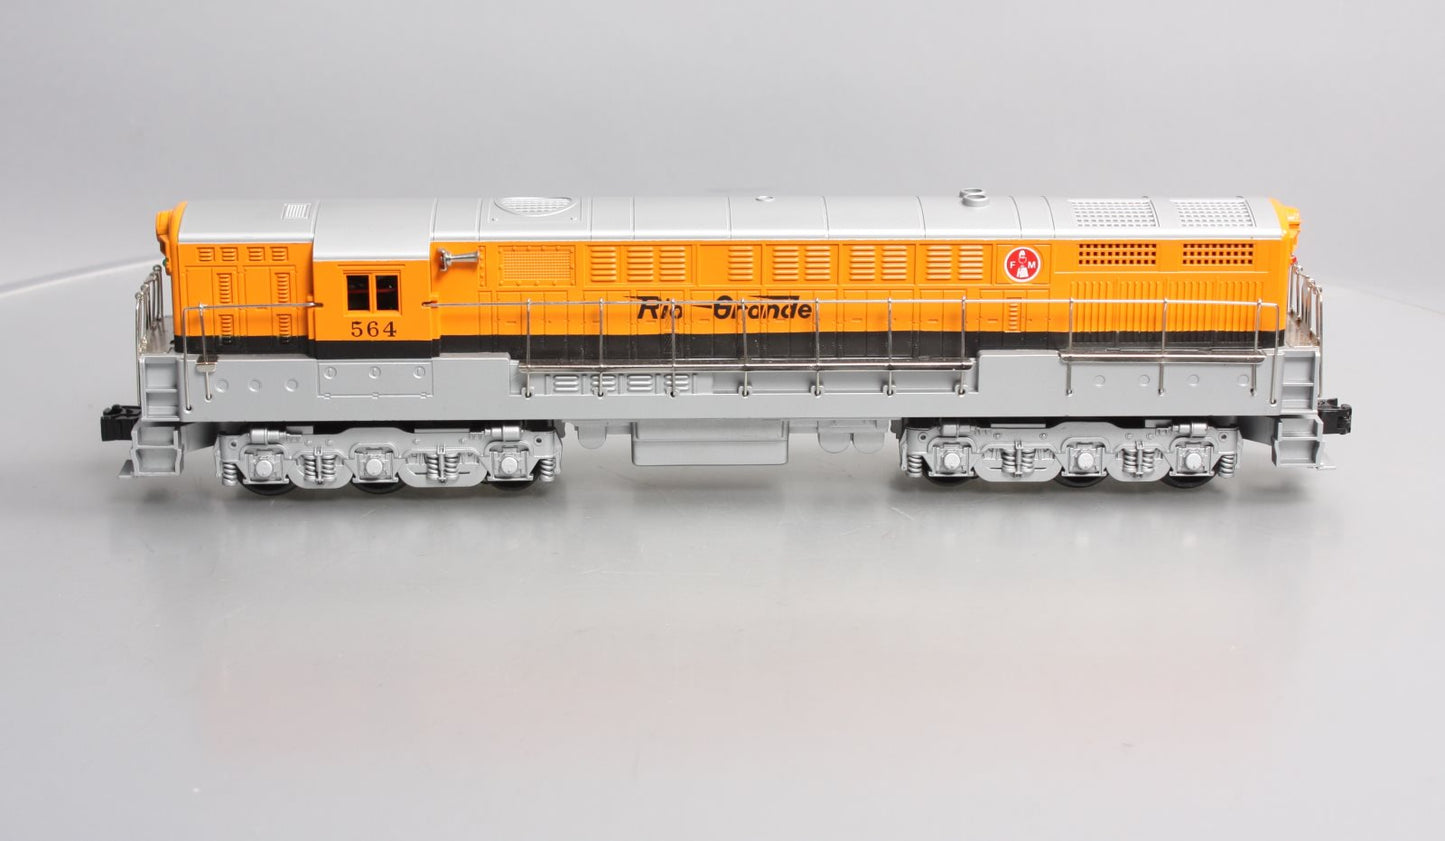 Custom Trains 564 O Denver & Rio Grande FM Trainmaster #564 EX/Box